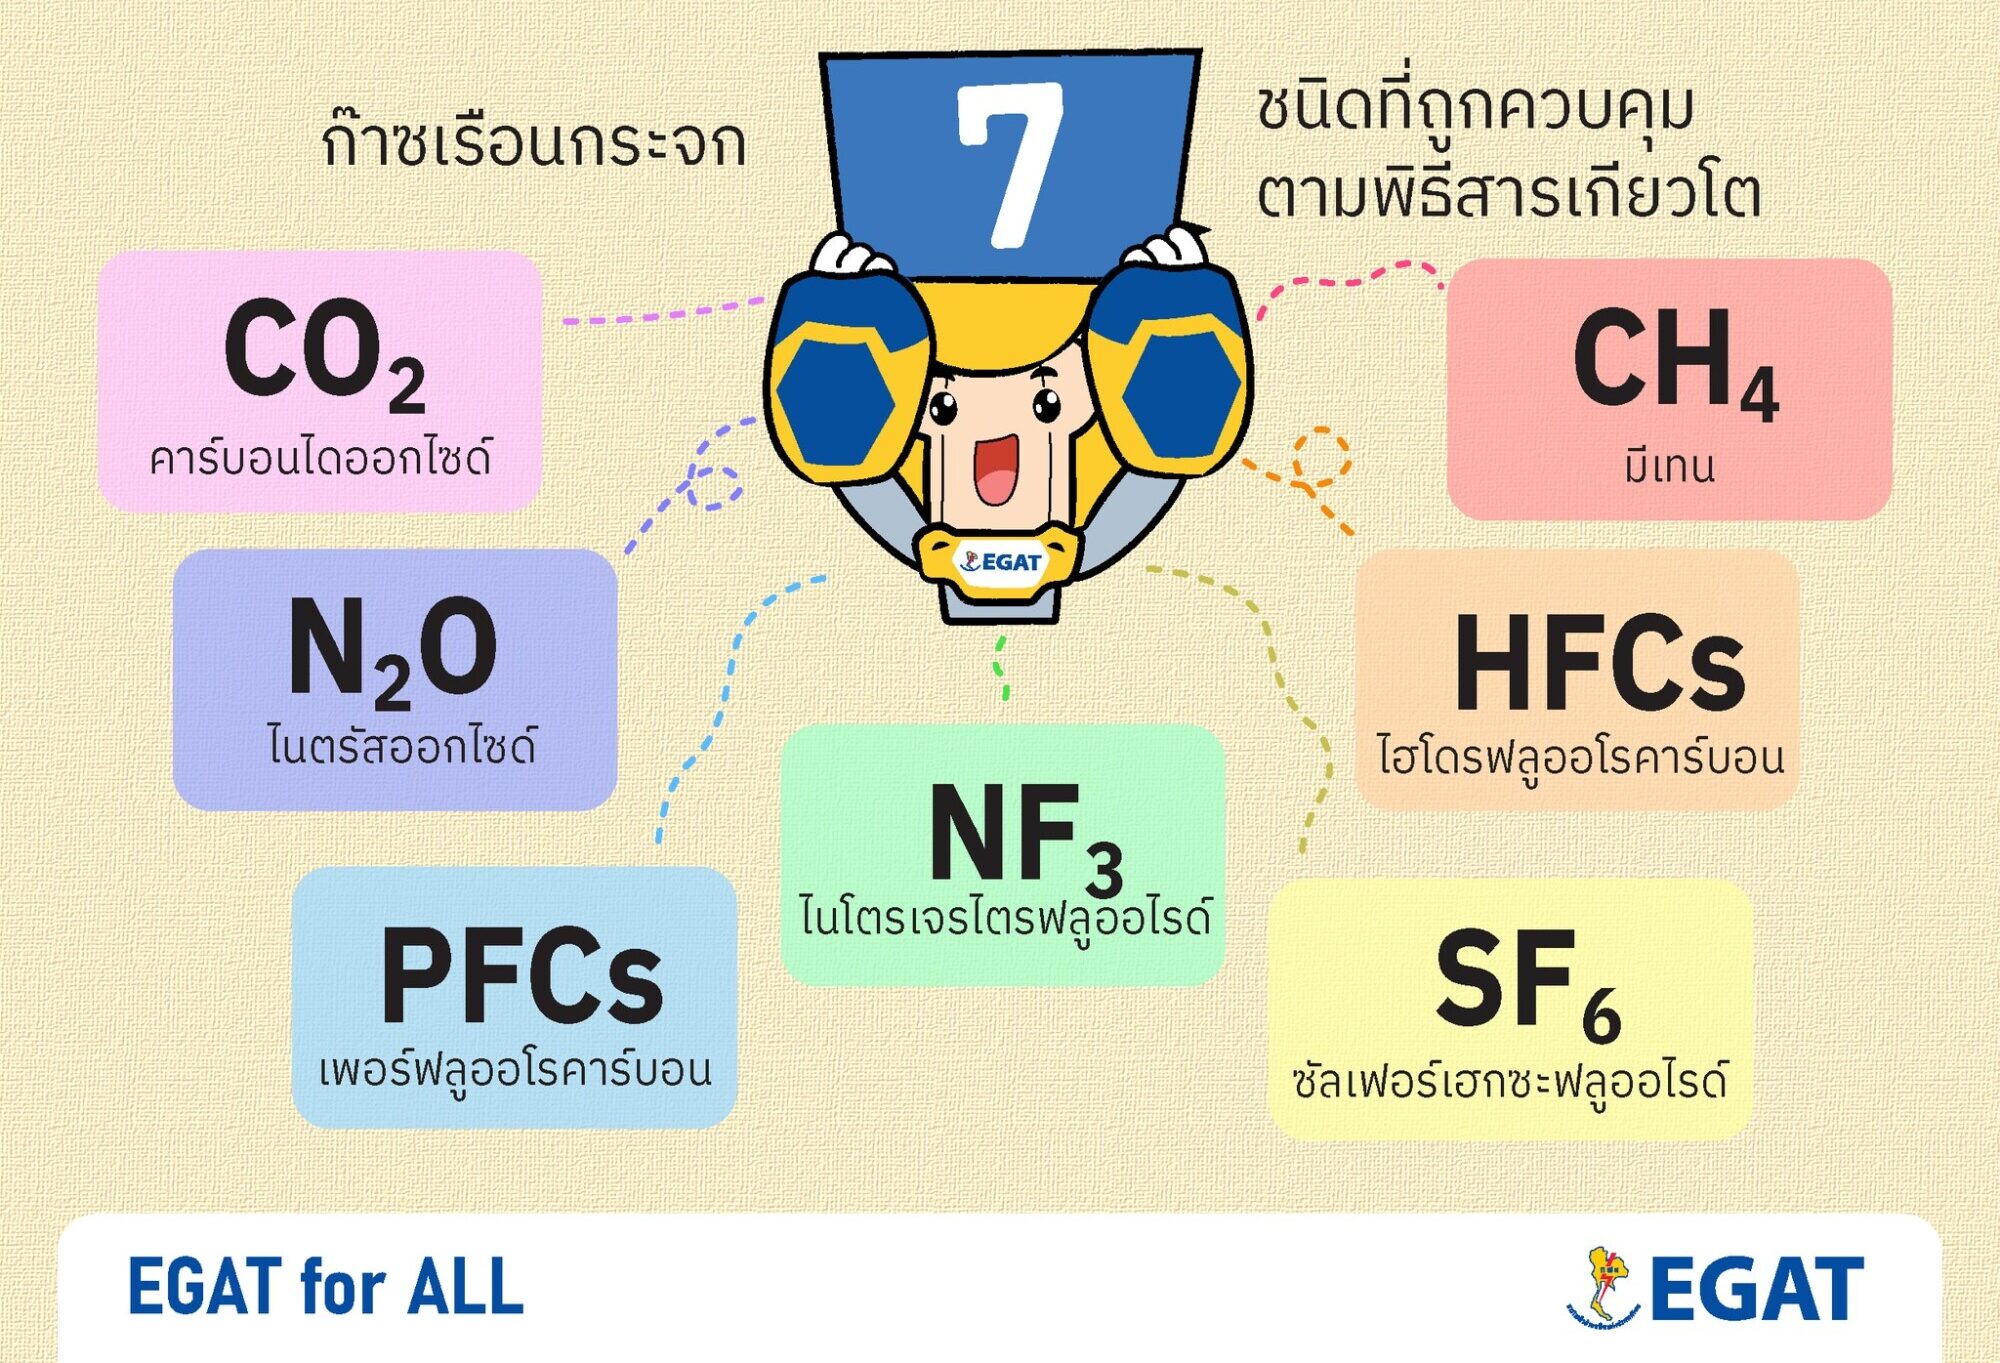 Credit: กฟผ. การไฟฟ้าฝ่ายผลิตแห่งประเทศไทย